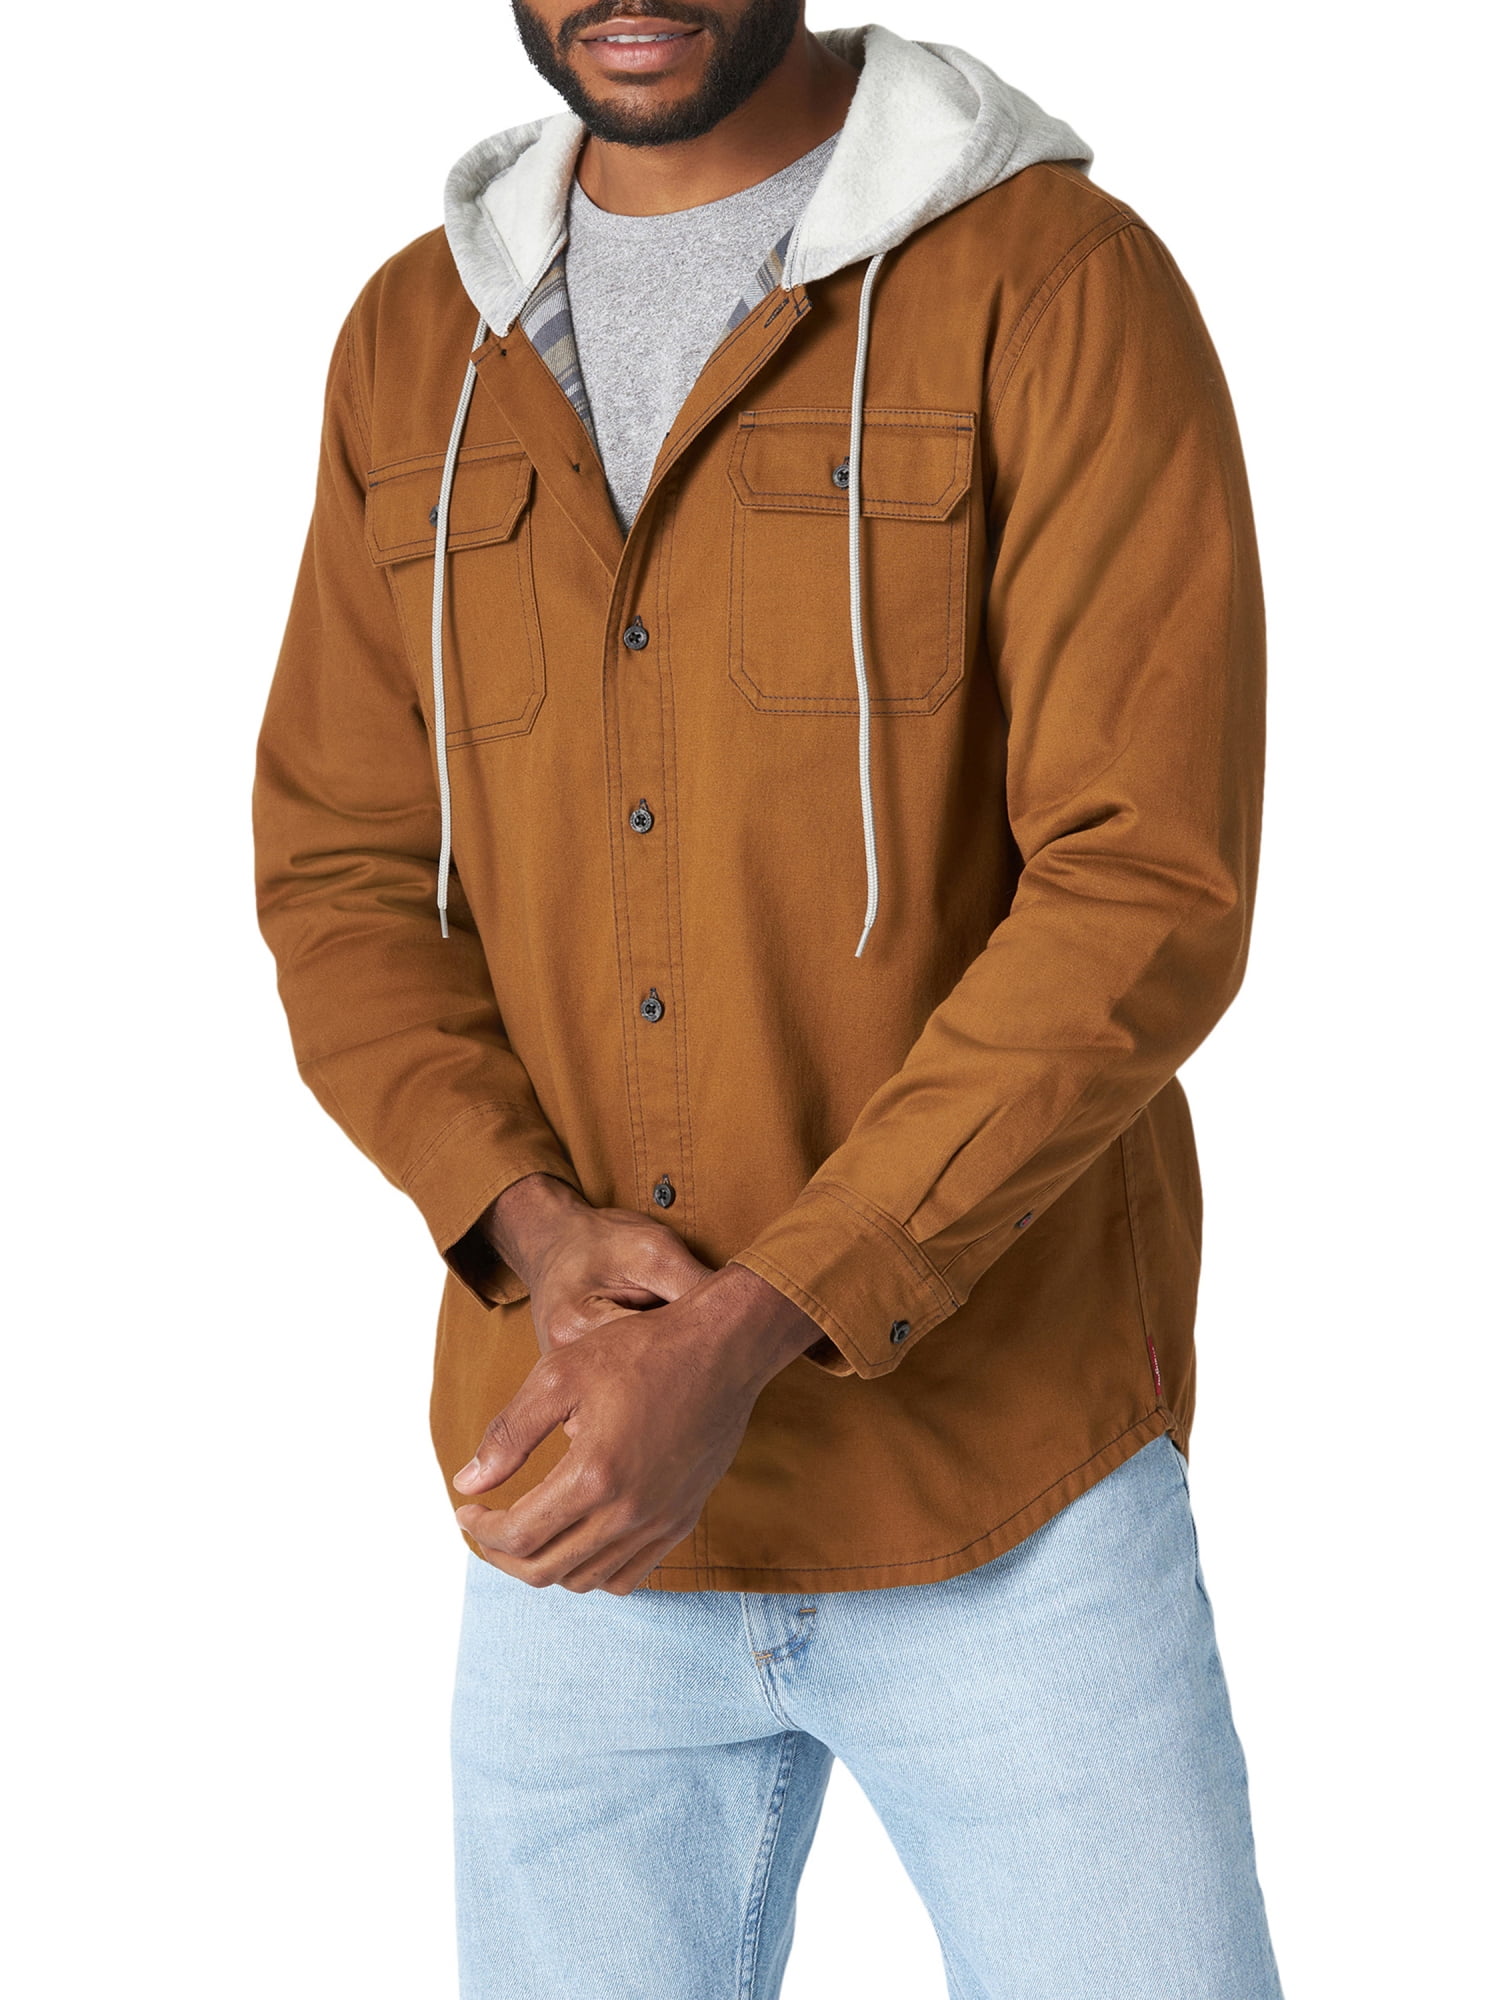 Wrangler Men's Long Sleeve Hooded Lined Flannel Shirt Jacket 